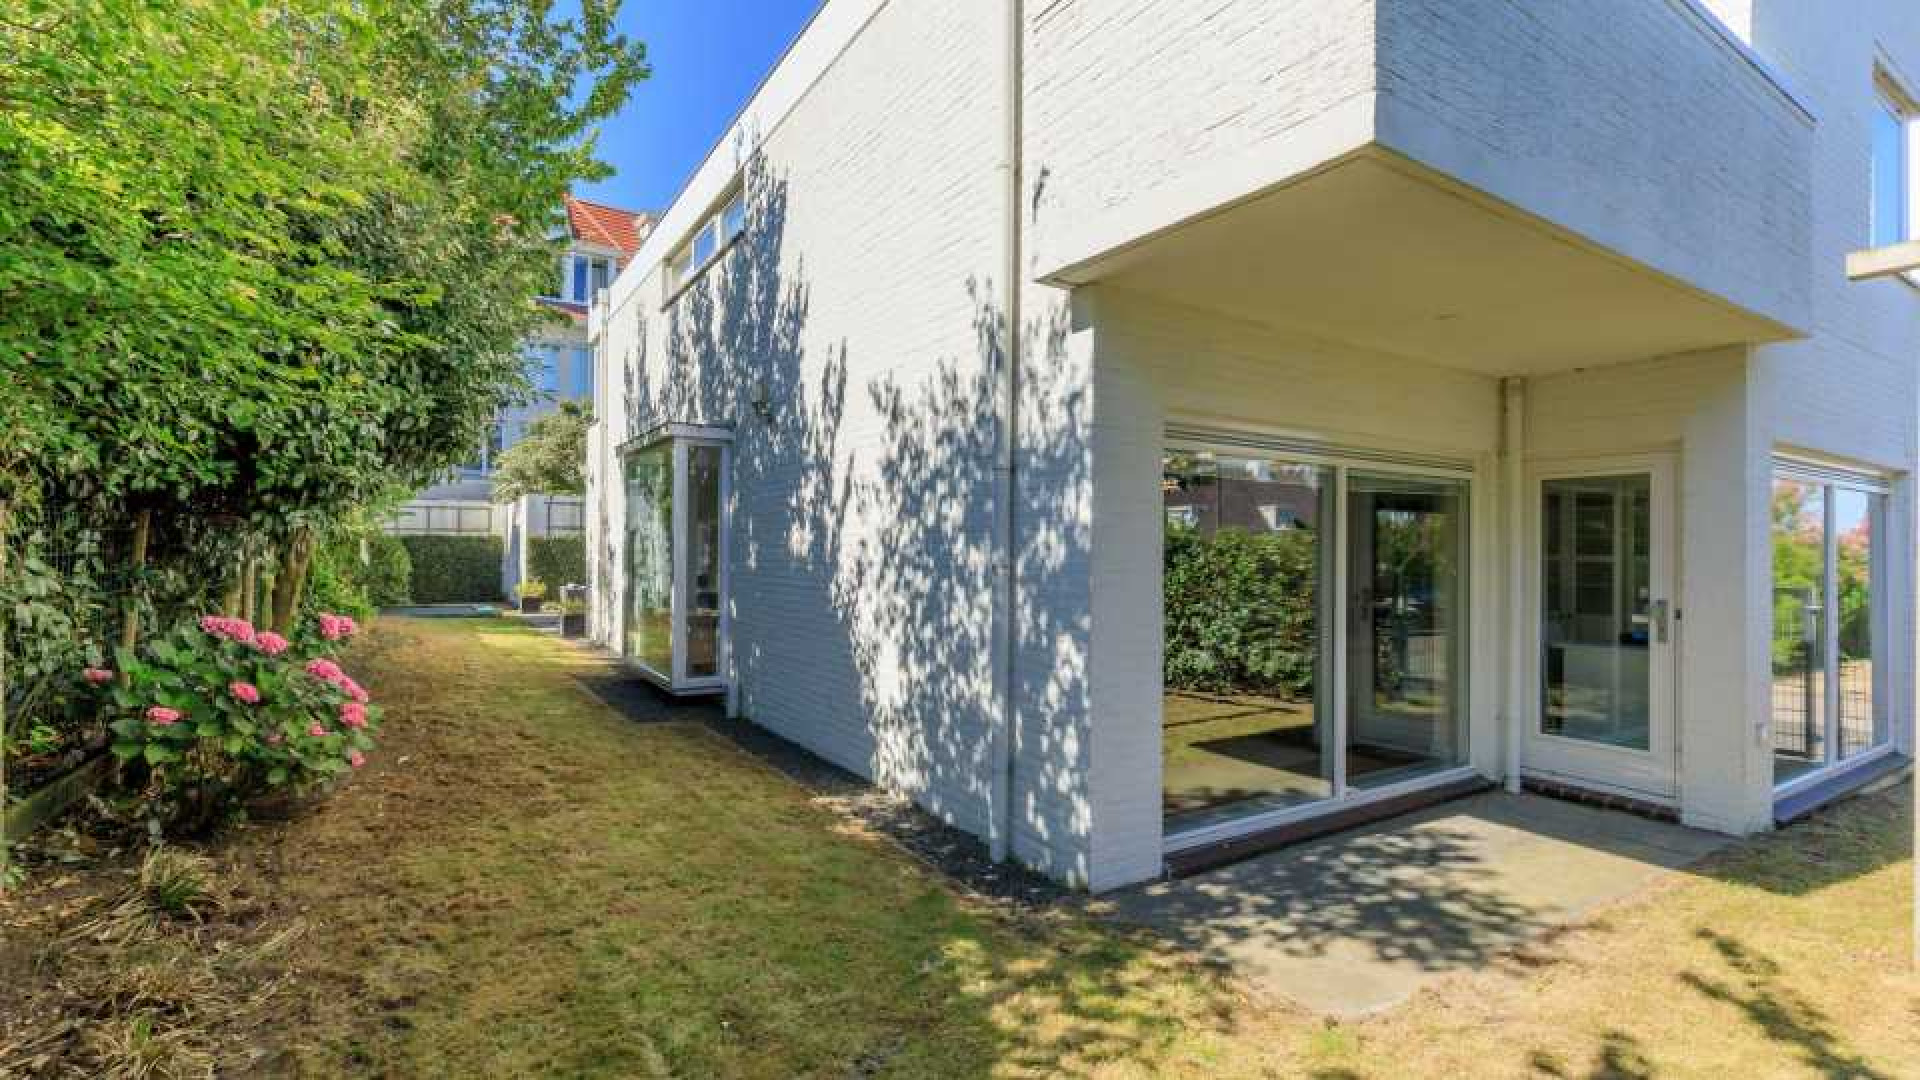 Prins Pieter Christiaan van Vollenhoven zet zijn villa te koop. Zie binnenfoto's